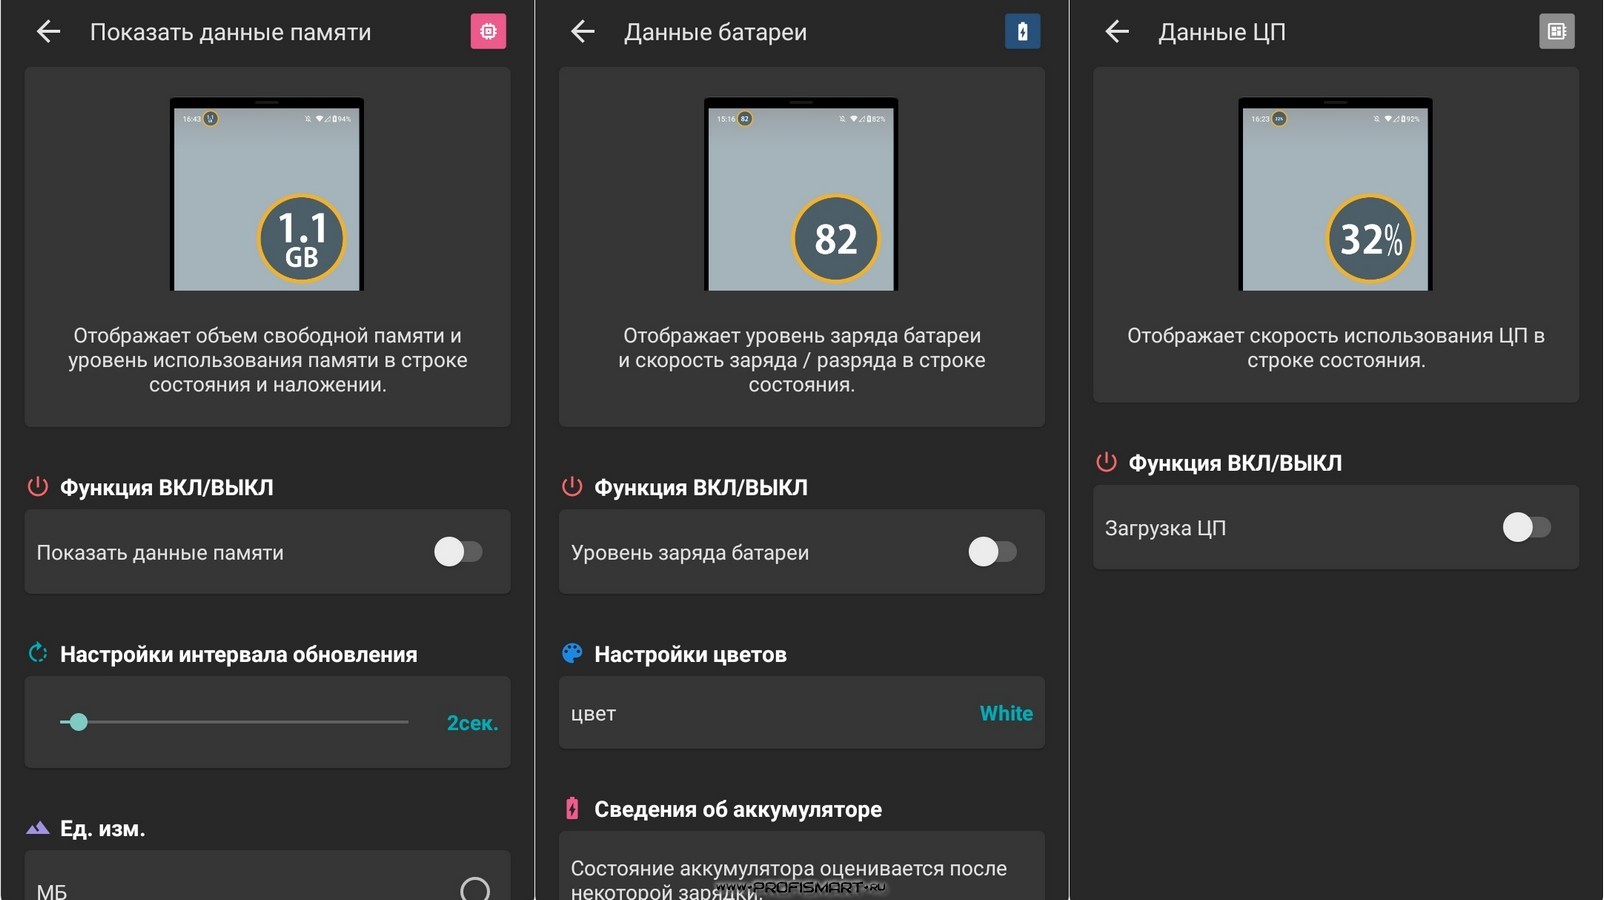 Скачать приложение на андроид бесплатно на русском без регистрации телеграмм фото 115